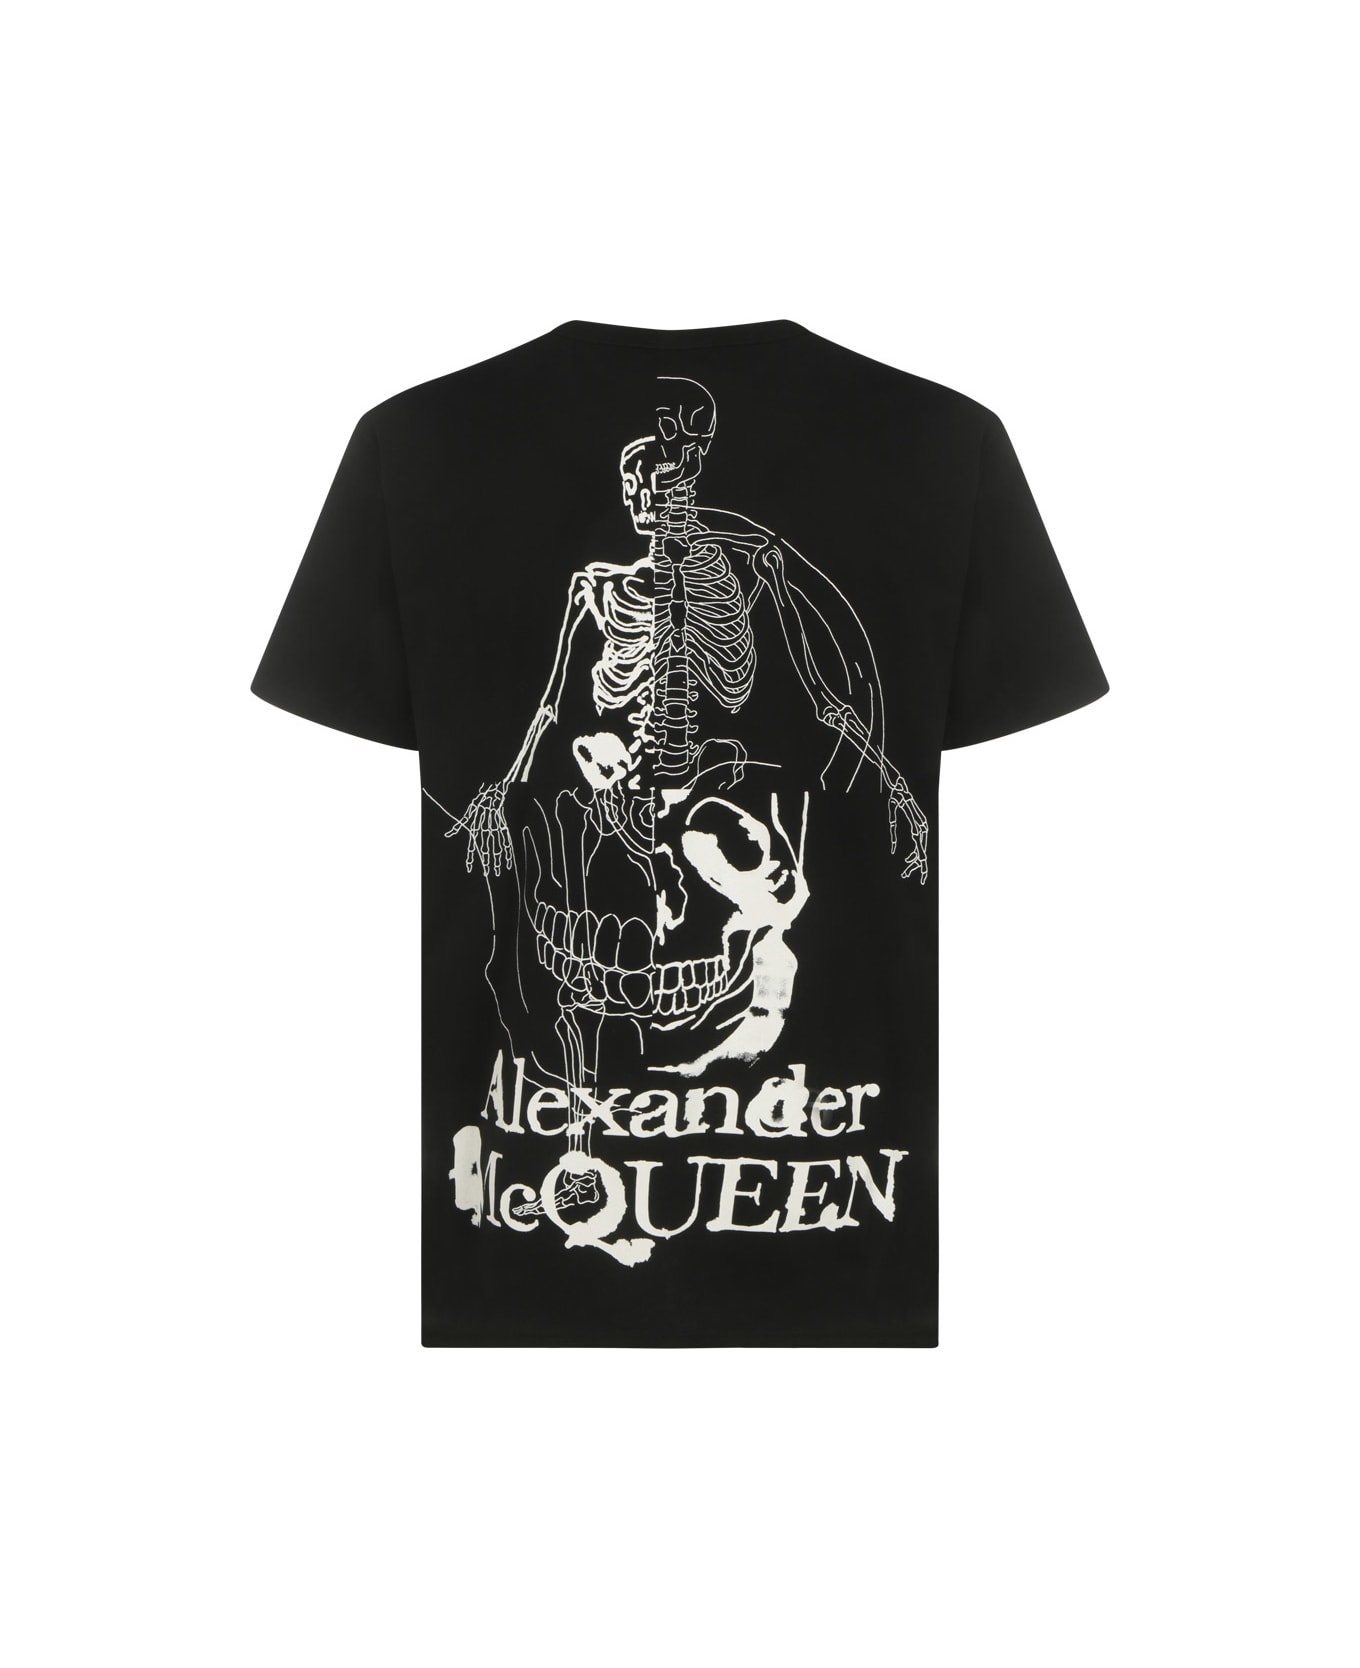 Alexander McQueen T-shirt - Black/ivory